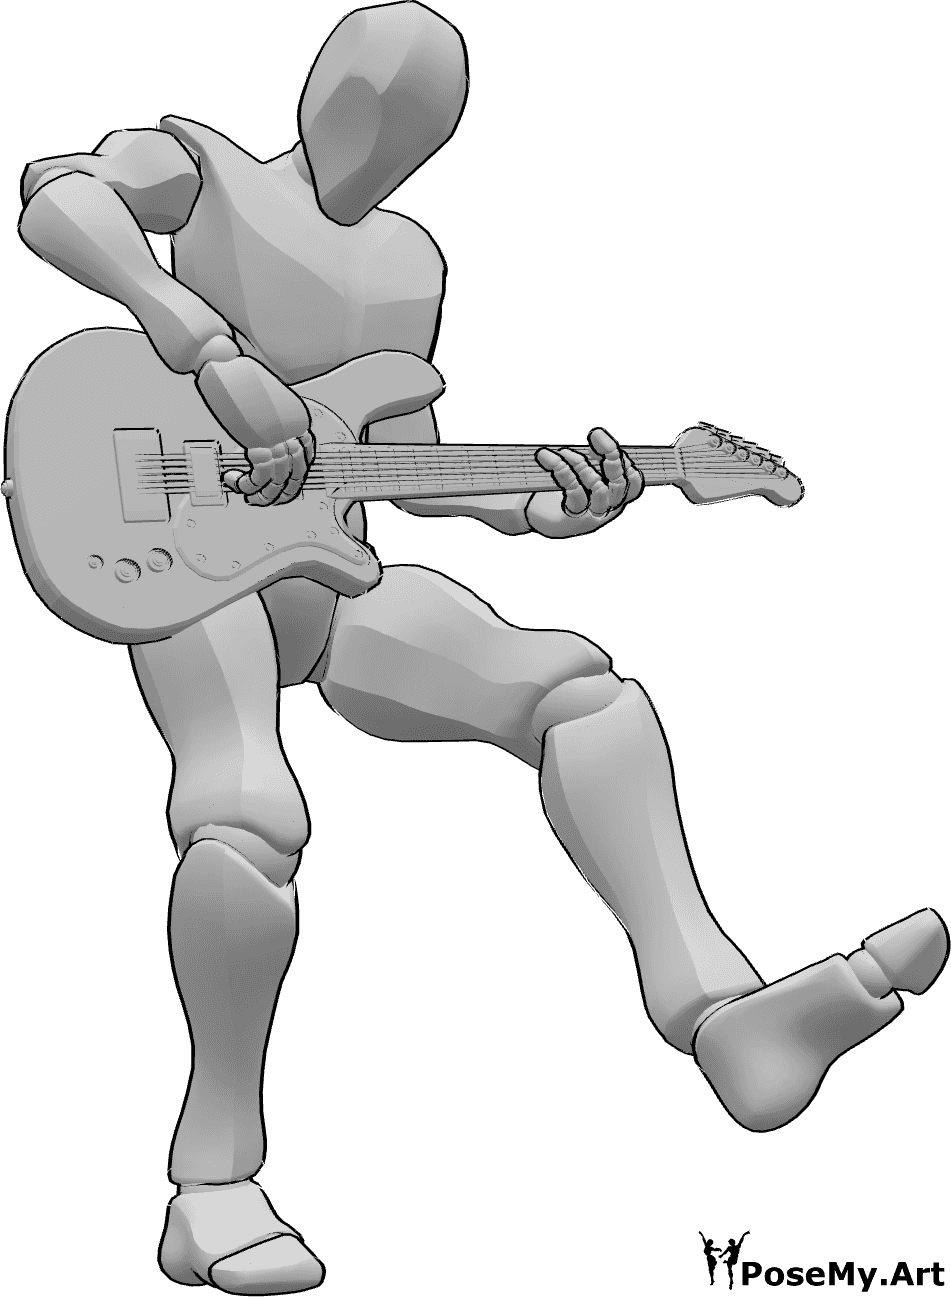 Referência de poses- Homem a dançar a fazer pose - Homem levanta a perna esquerda, dançando enquanto toca guitarra eléctrica, referência de desenho de guitarra eléctrica